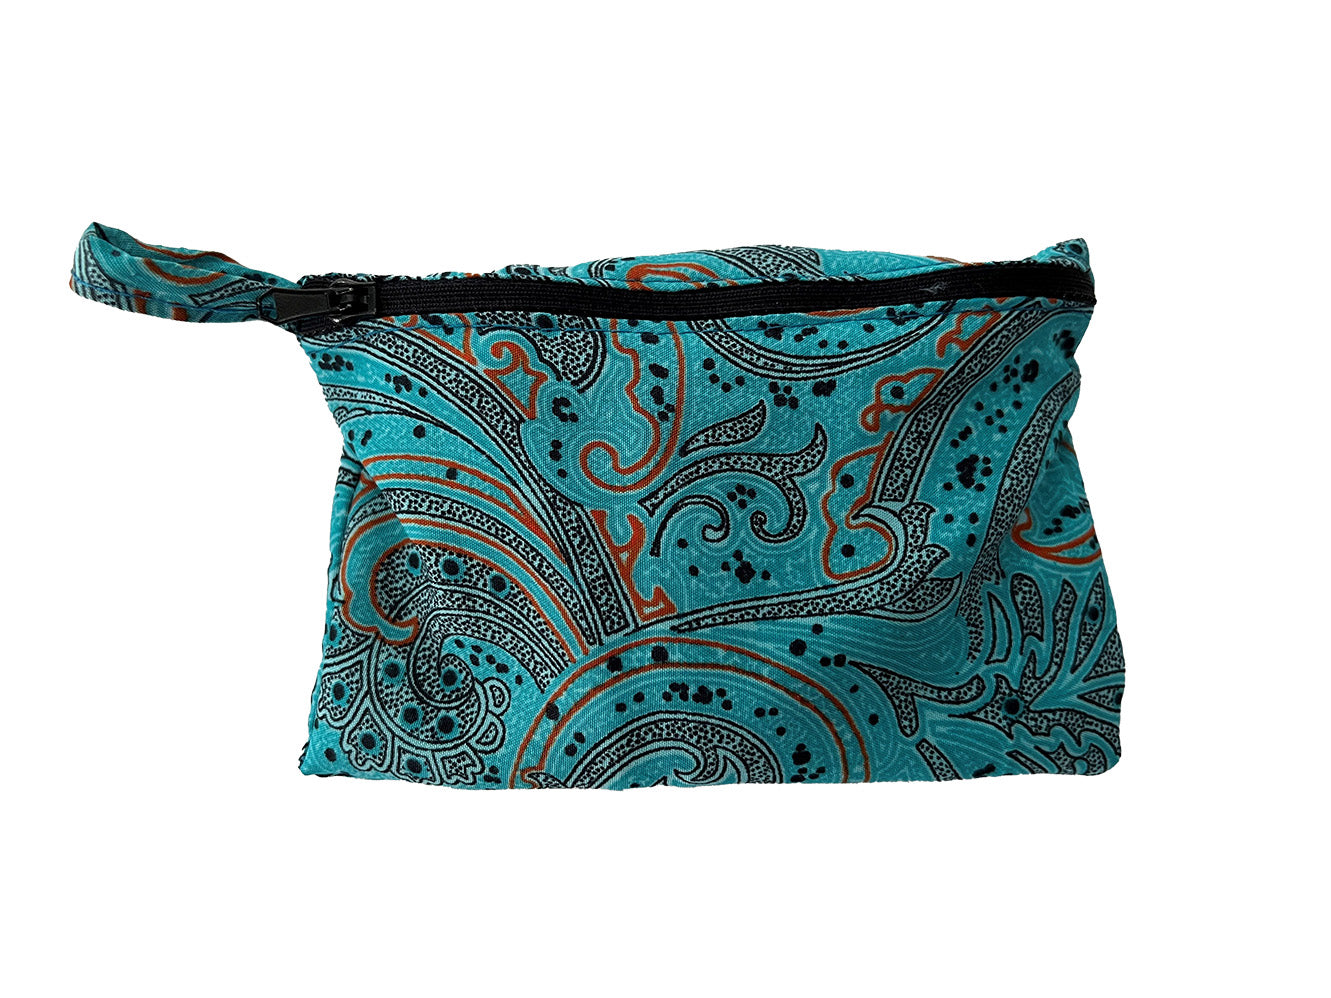 Yoga Mat Bag - Repurposed Sari Fabric - Black with Orange Sunburst